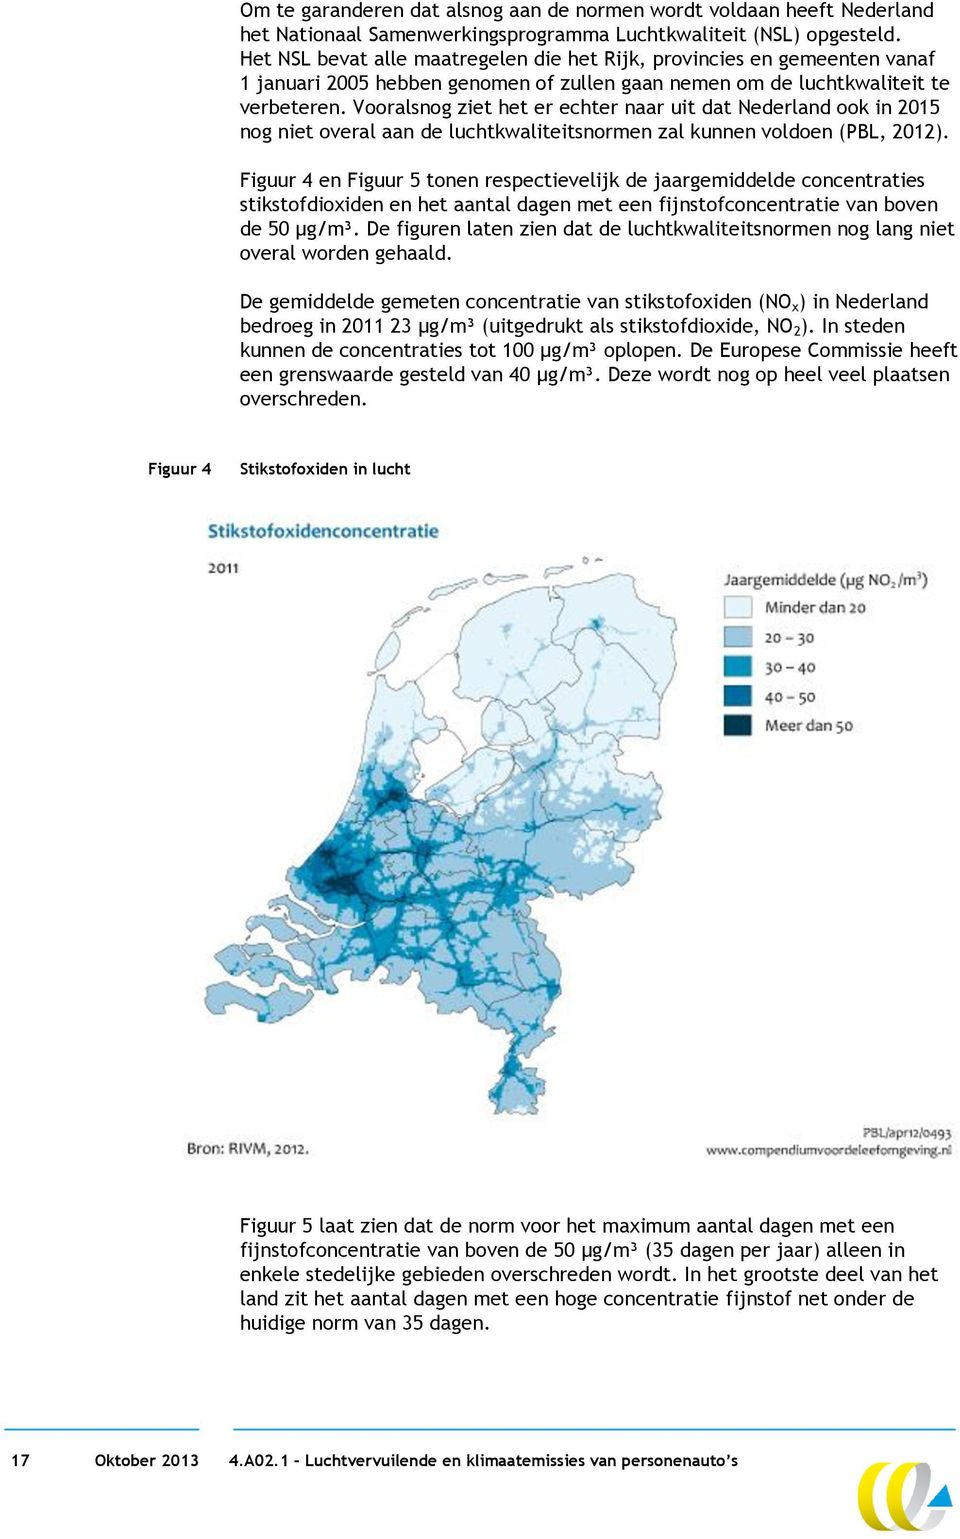 Vooralsnog ziet het er echter naar uit dat Nederland ook in 2015 nog niet overal aan de luchtkwaliteitsnormen zal kunnen voldoen (PBL, 2012).